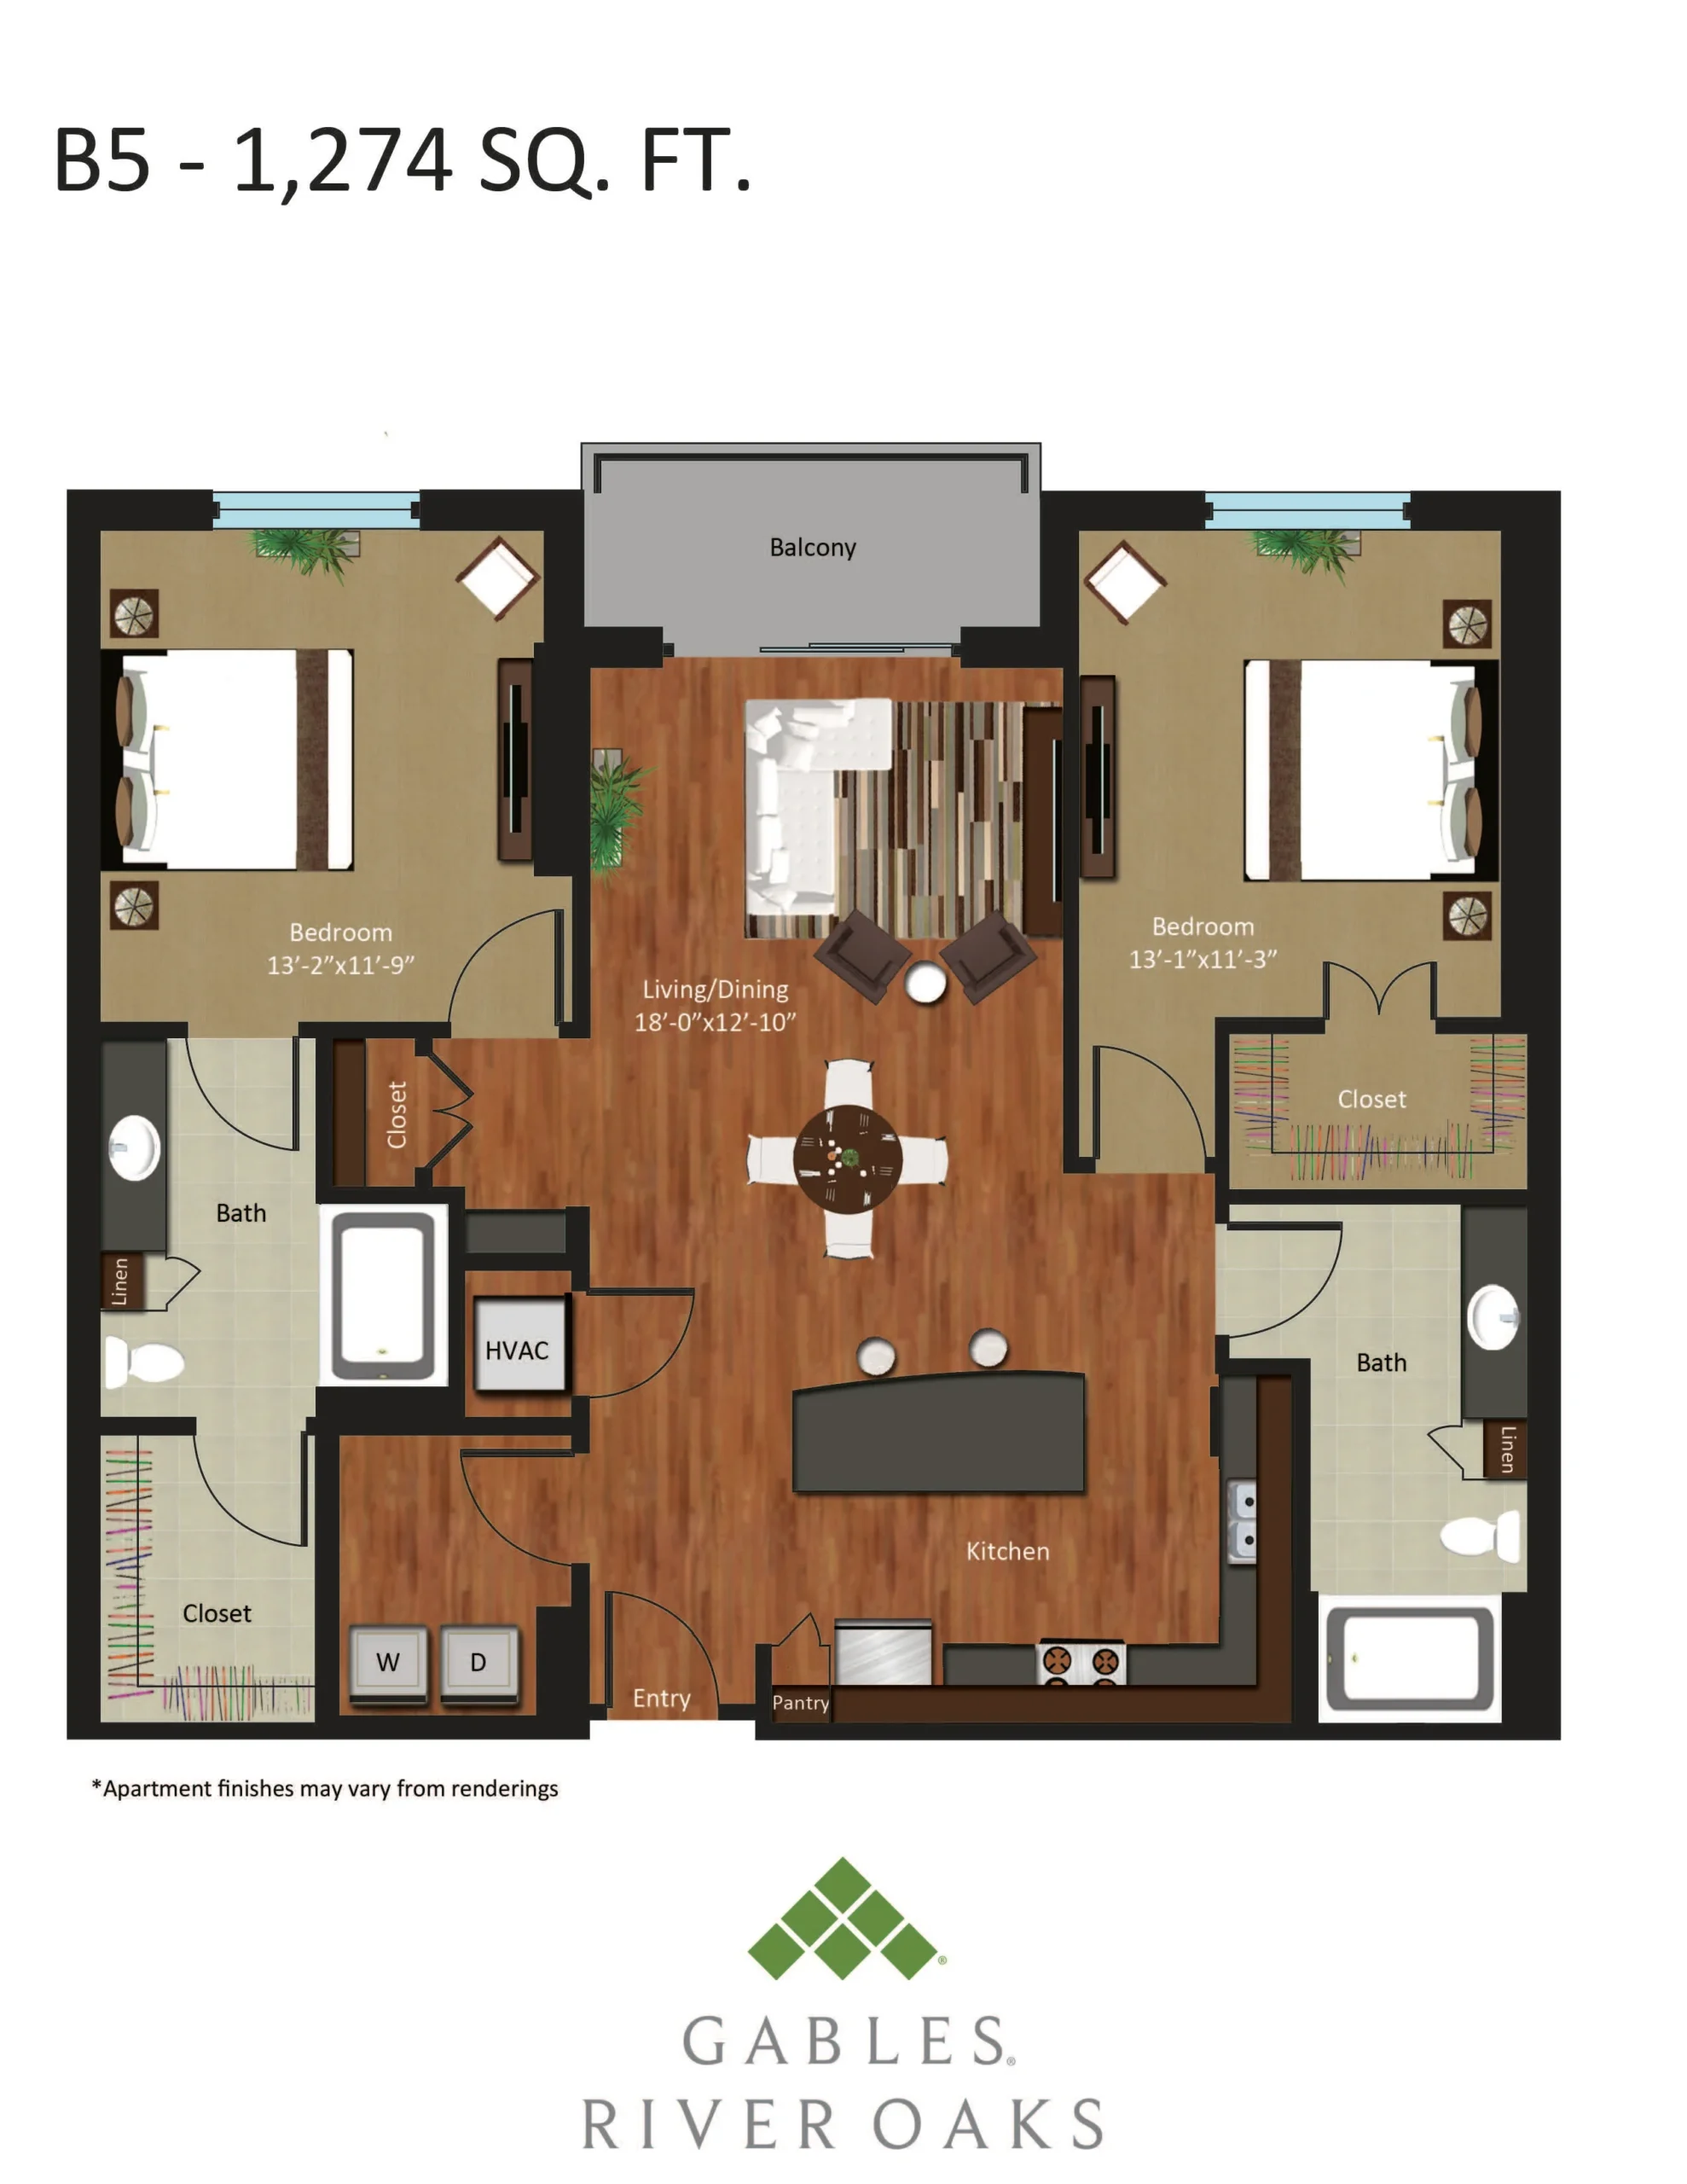 Gables River Oaks Floor Plan 29